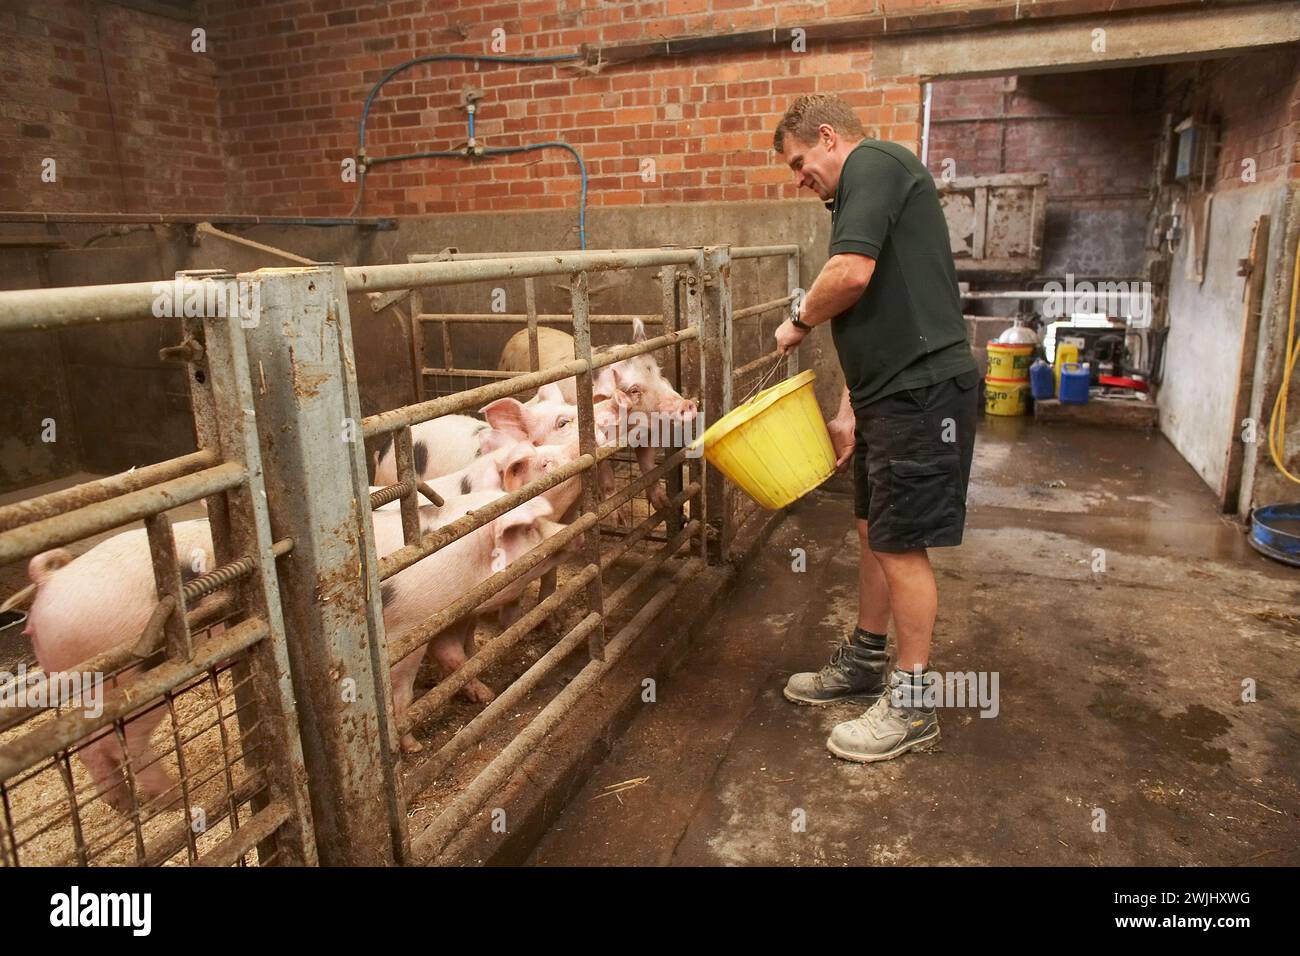 Agriculteur nourrissant des porcs au Royaume-Uni Banque D'Images